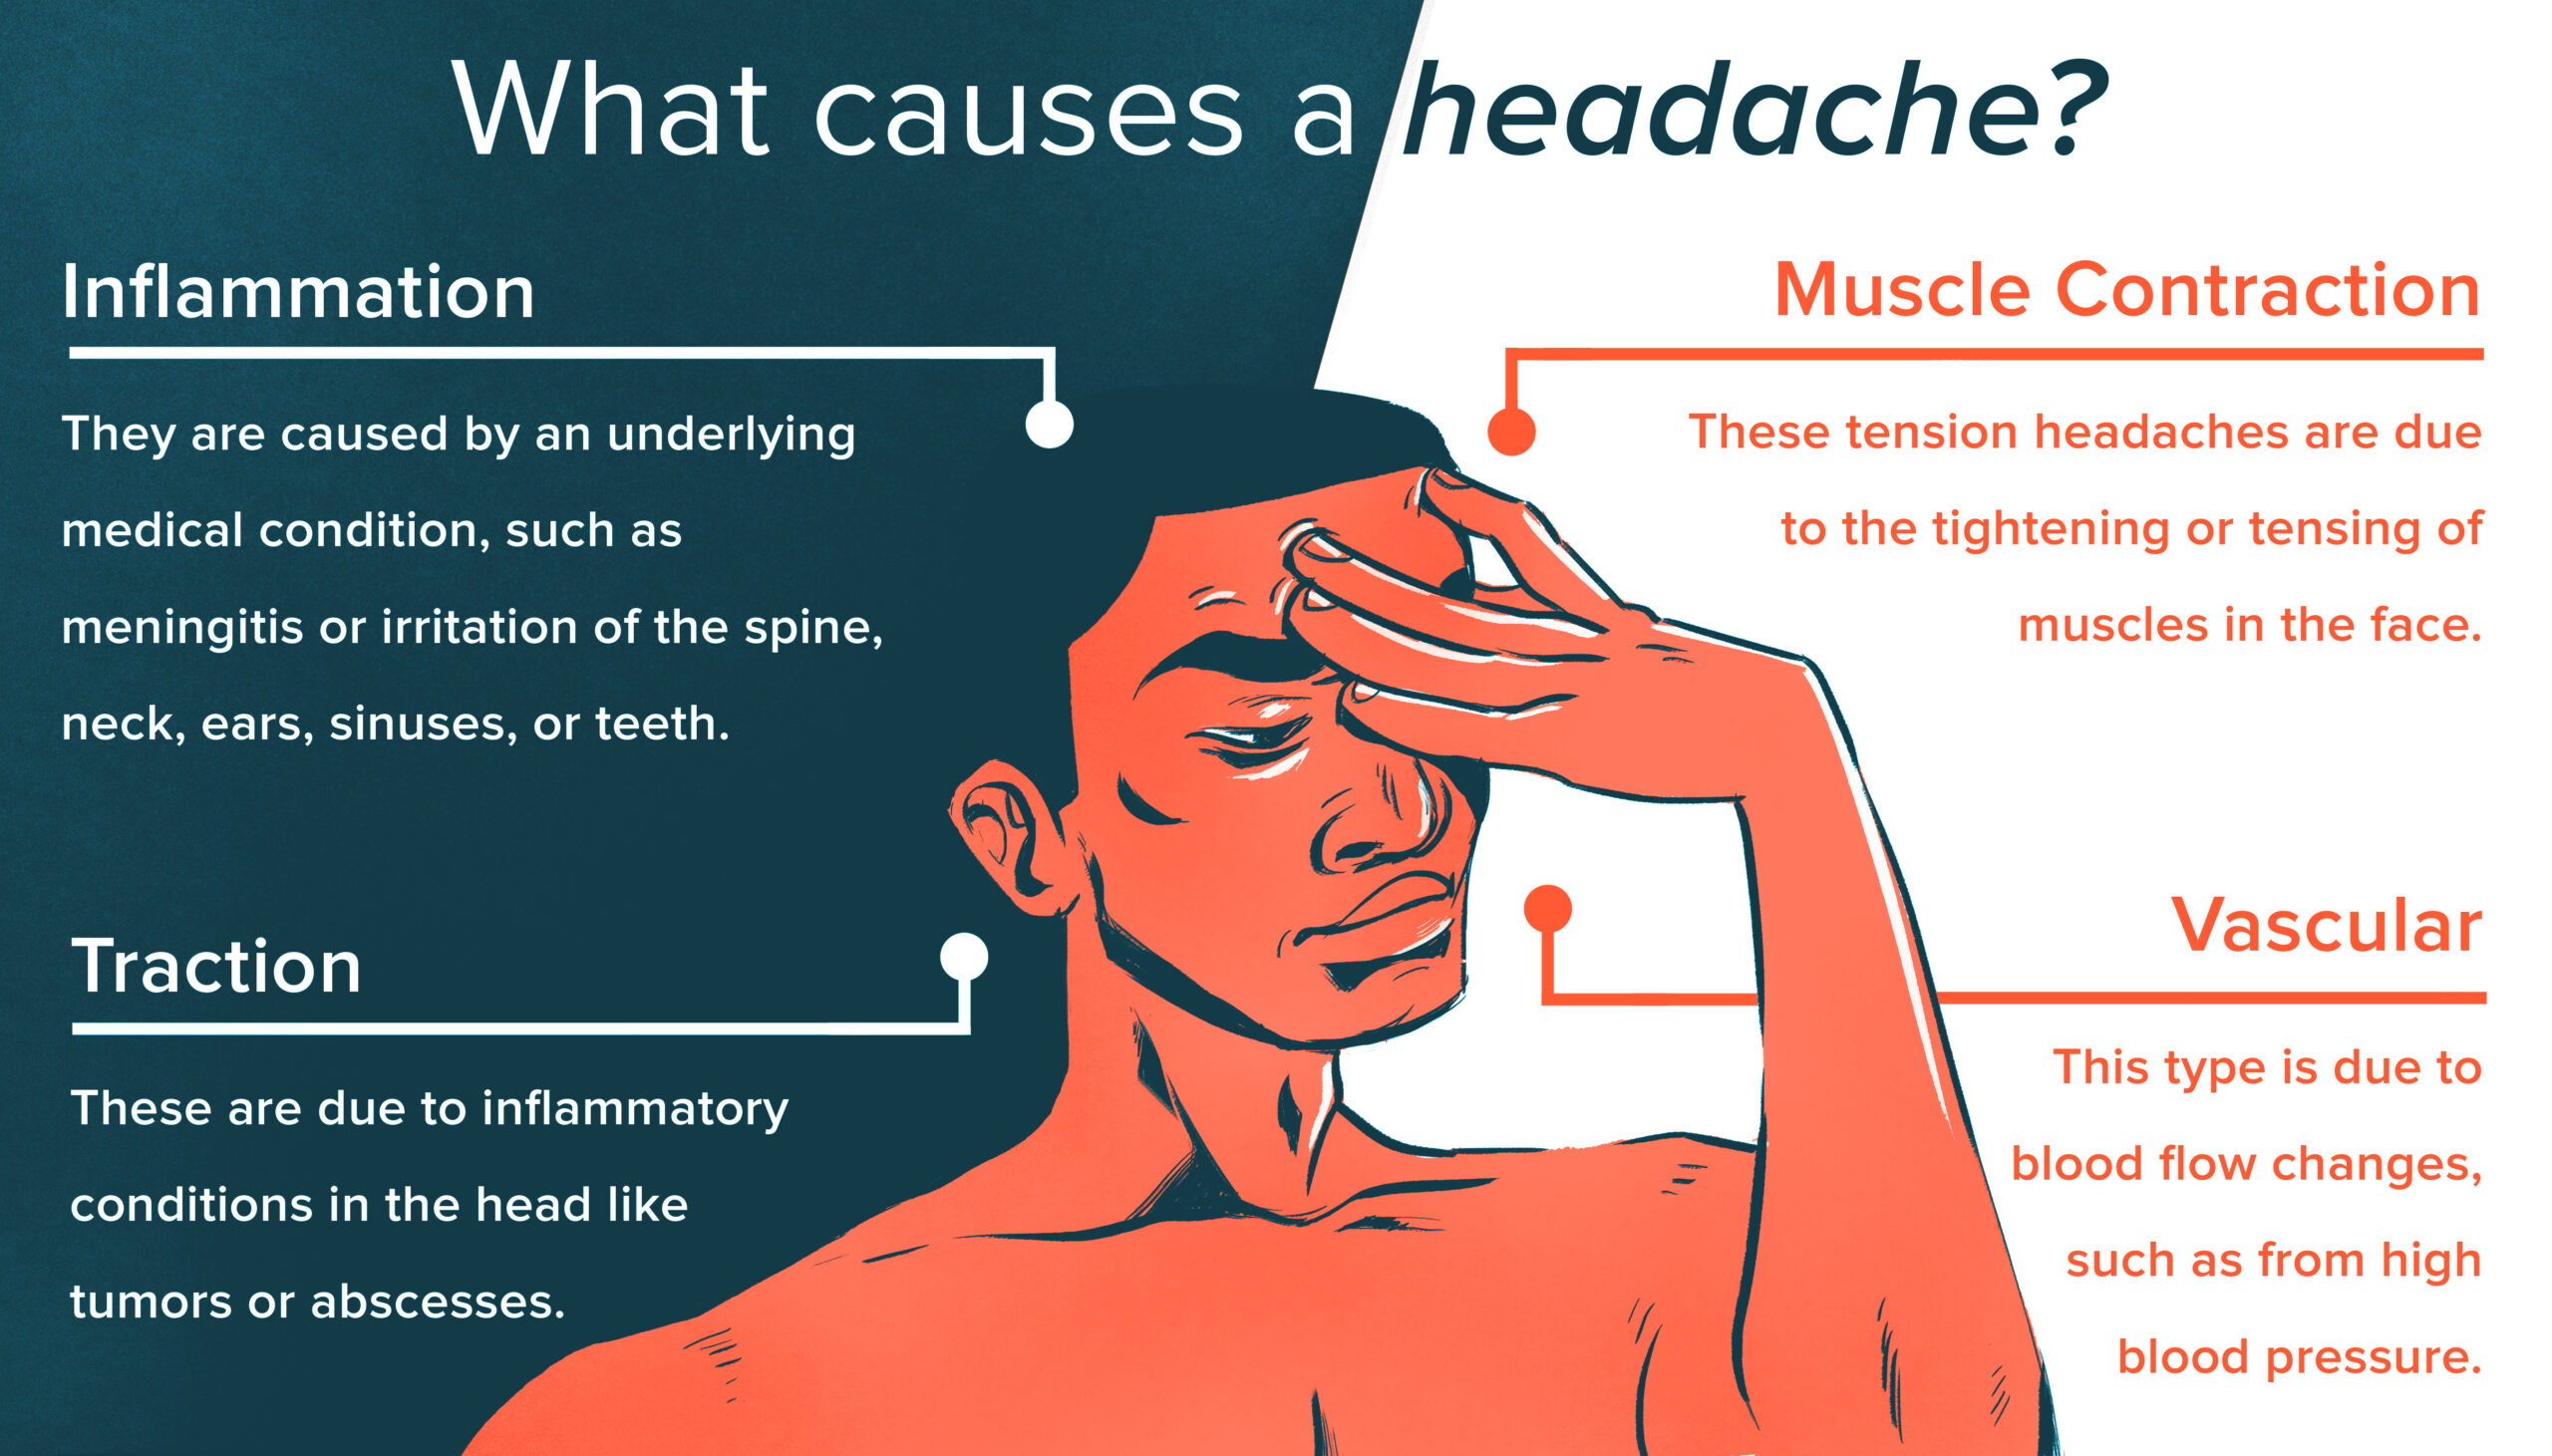 ठंड से होने वाले सिरदर्द को कैसे कम करें